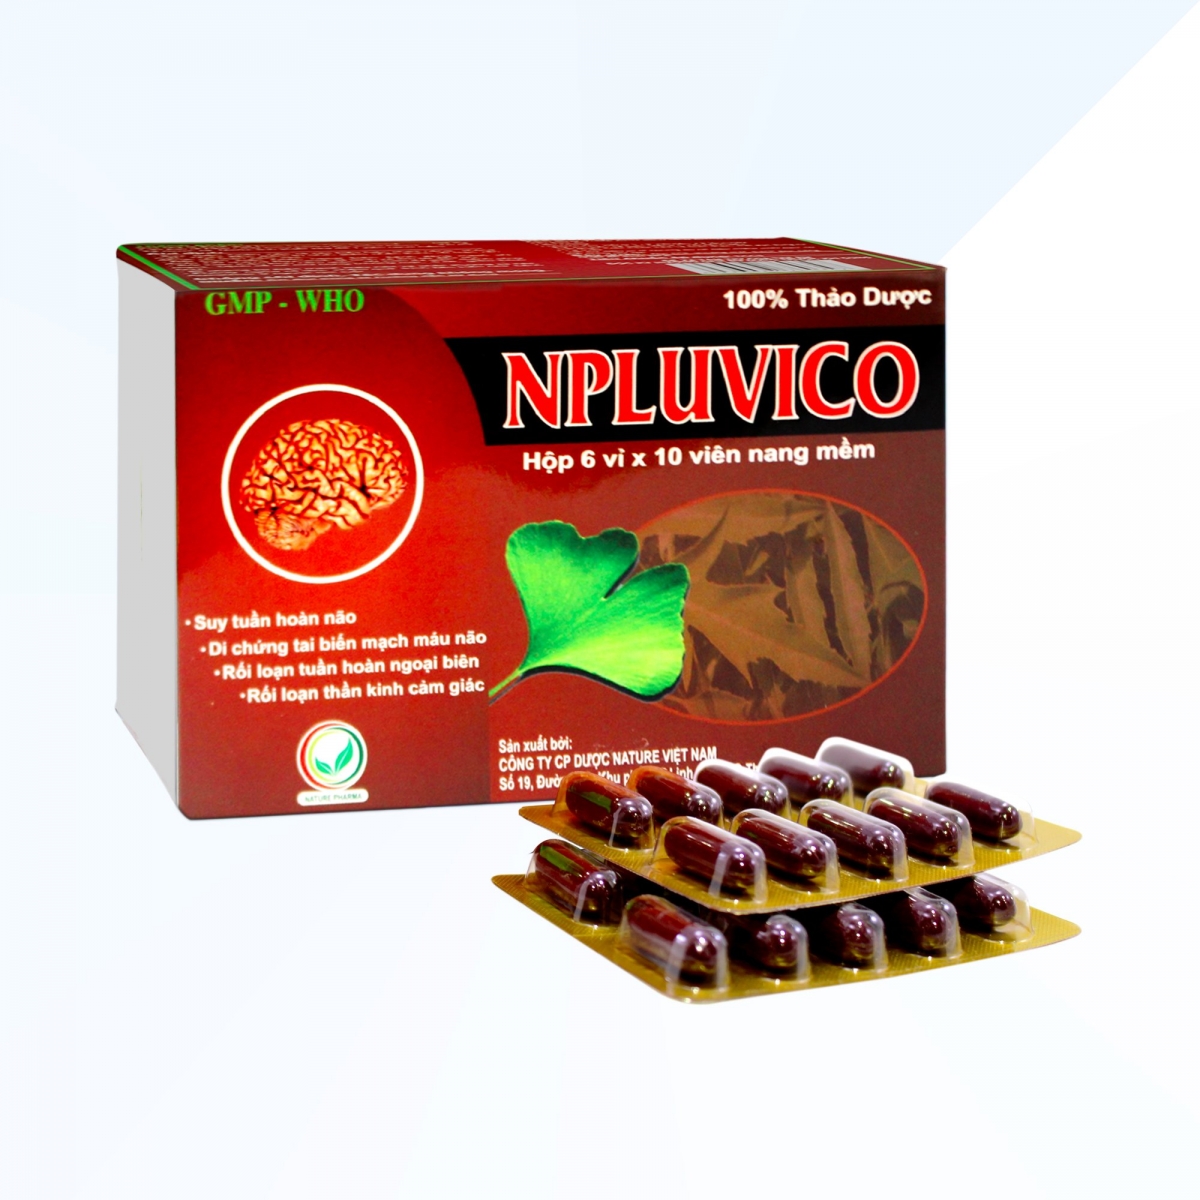 Một lô thuốc Npluvico vi phạm mức độ 2 vừa bị yêu cầu thu hồi trên toàn quốc.